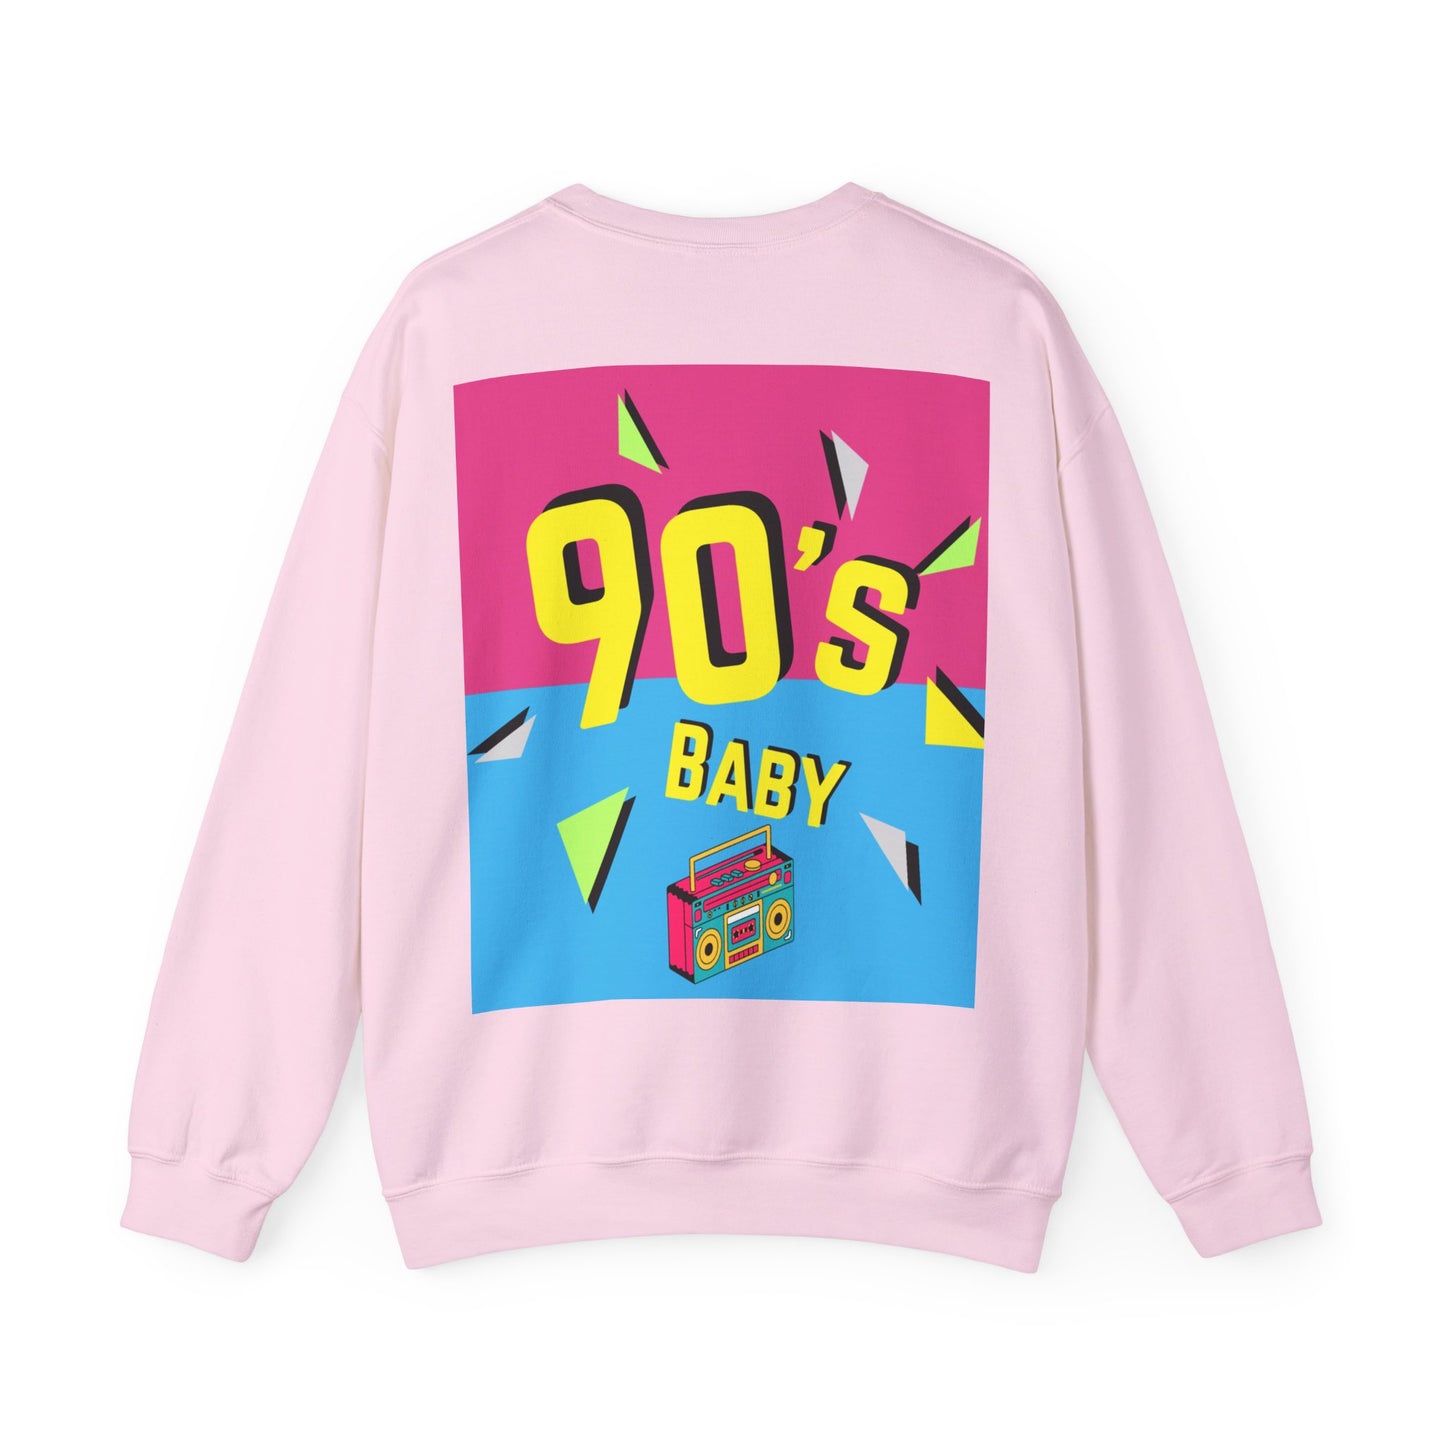 Y2k 90's Baby Crewneck Sweatshirt